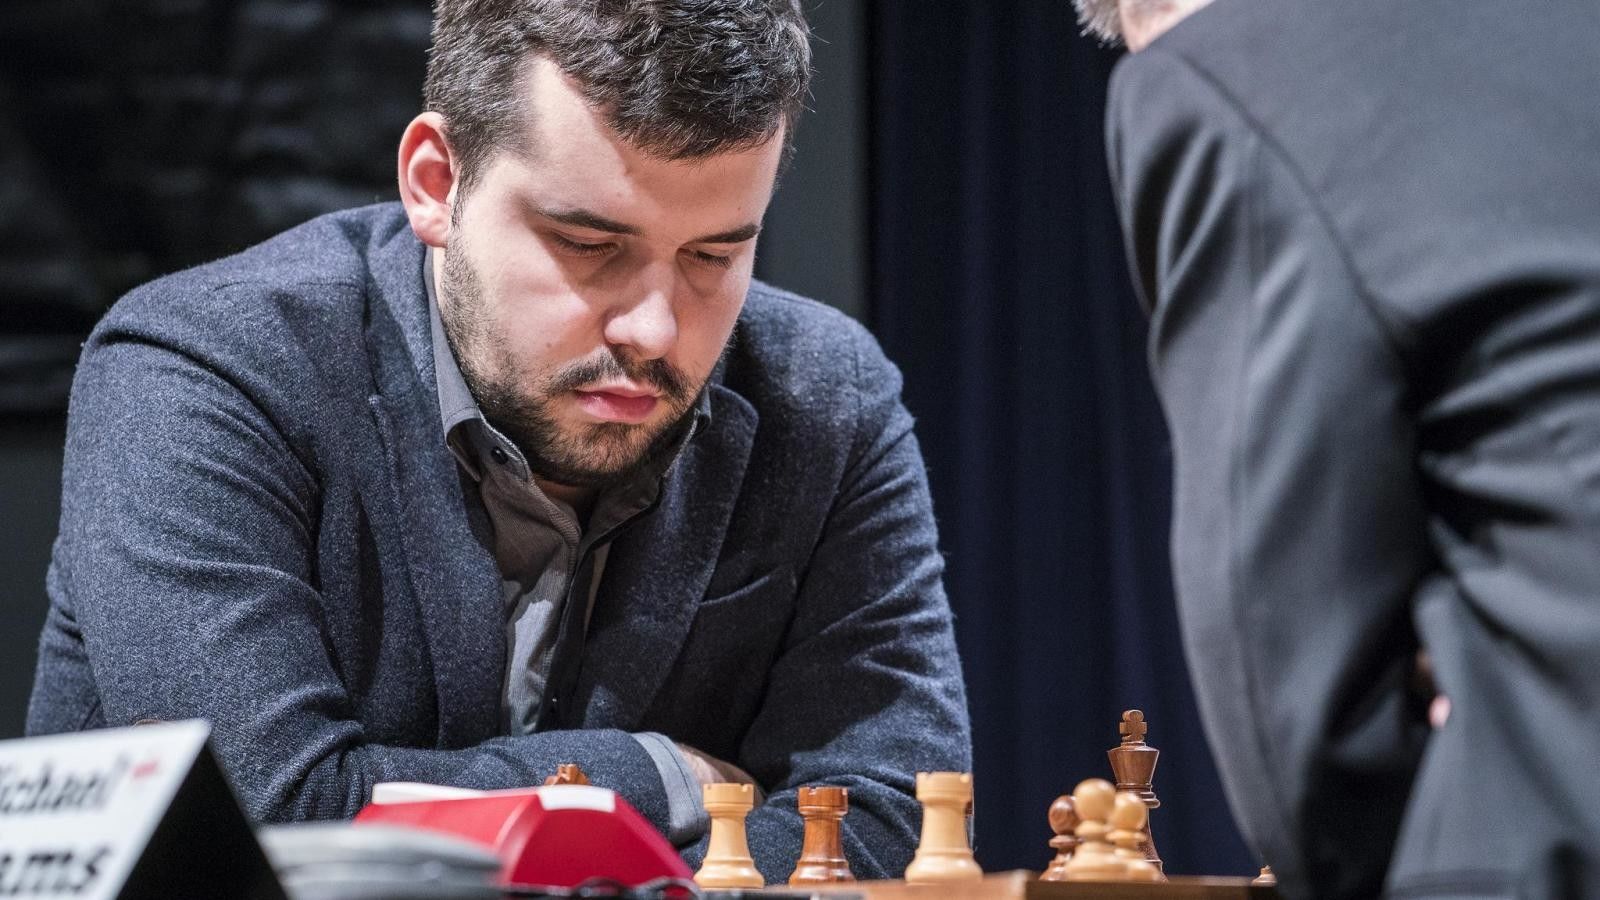 Жуков заявил, что Непомнящий играет с небольшим перевесом в матче с Карлсеном за шахматную корону